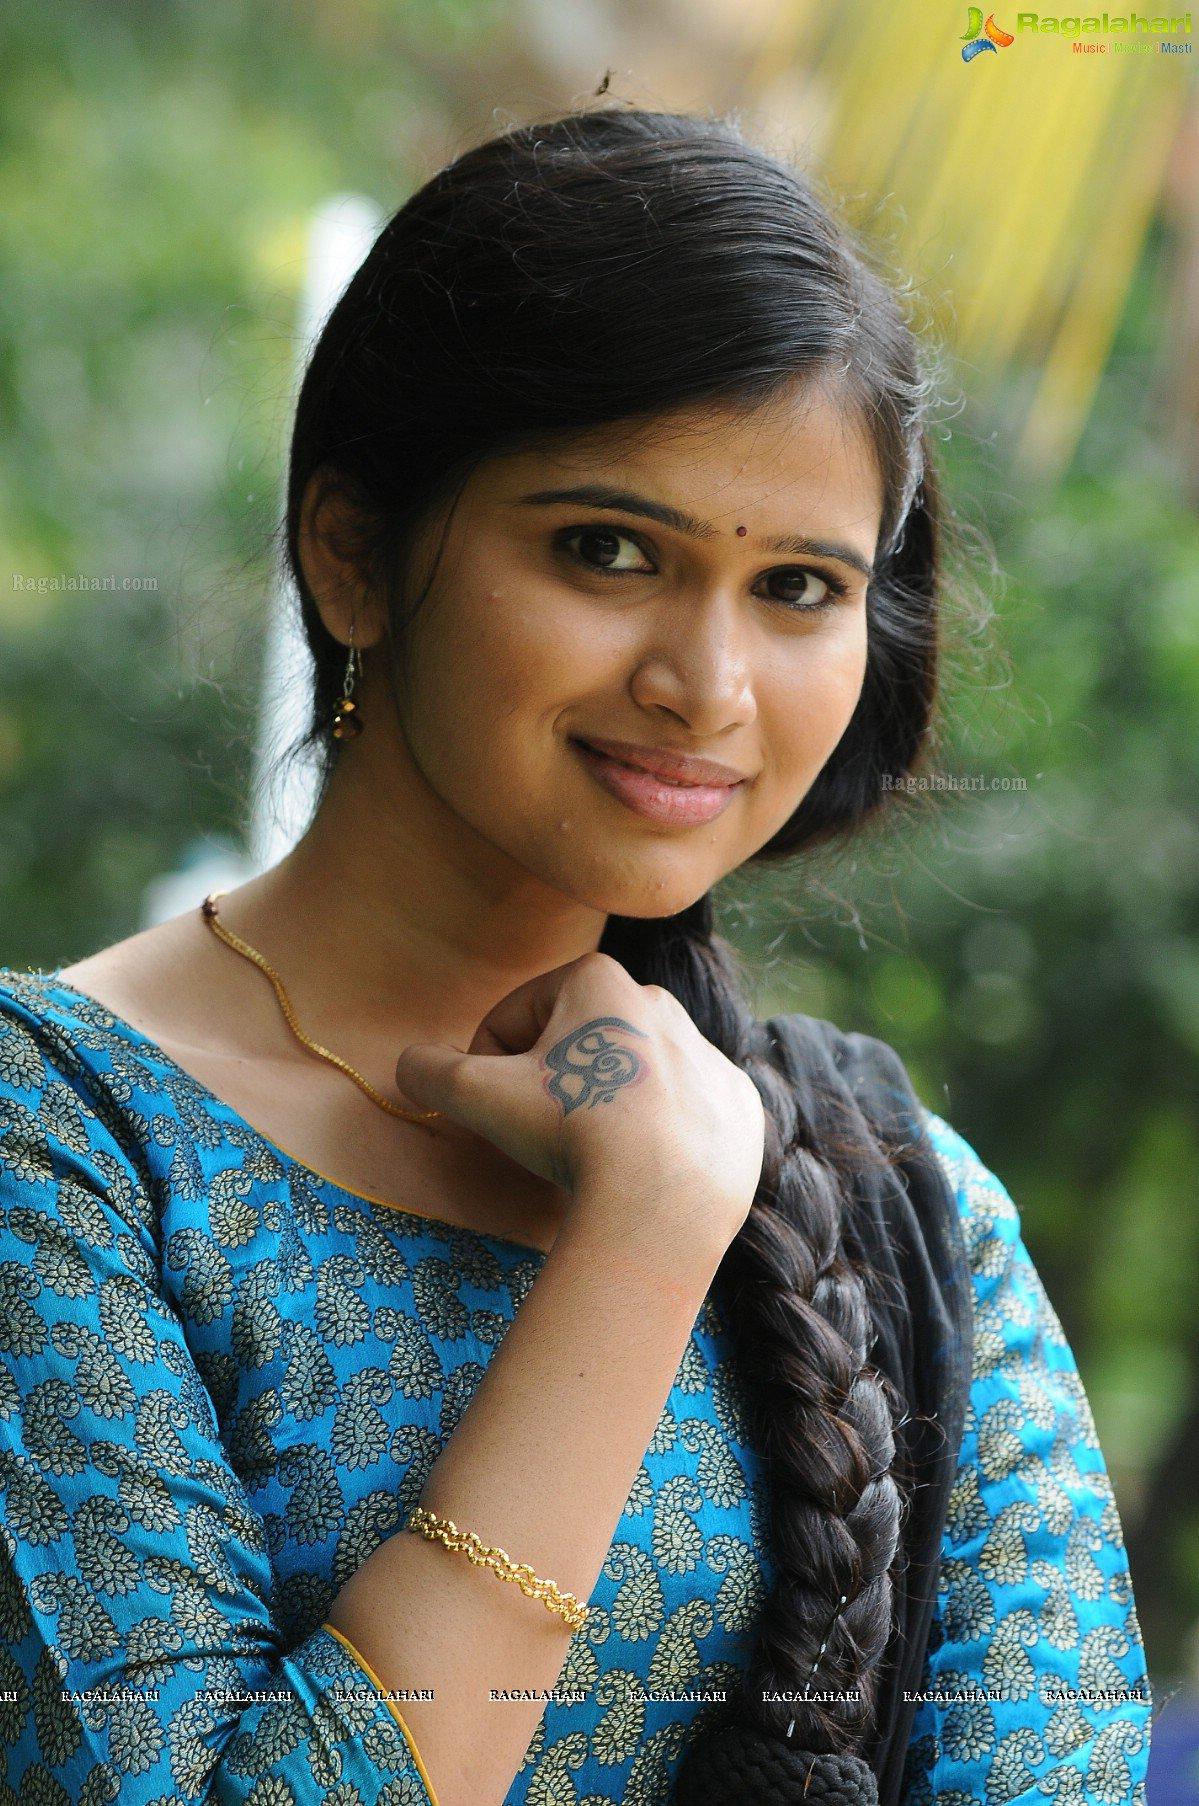 Srilatha Image 24. Tollywood Actress Image, Image, Photo